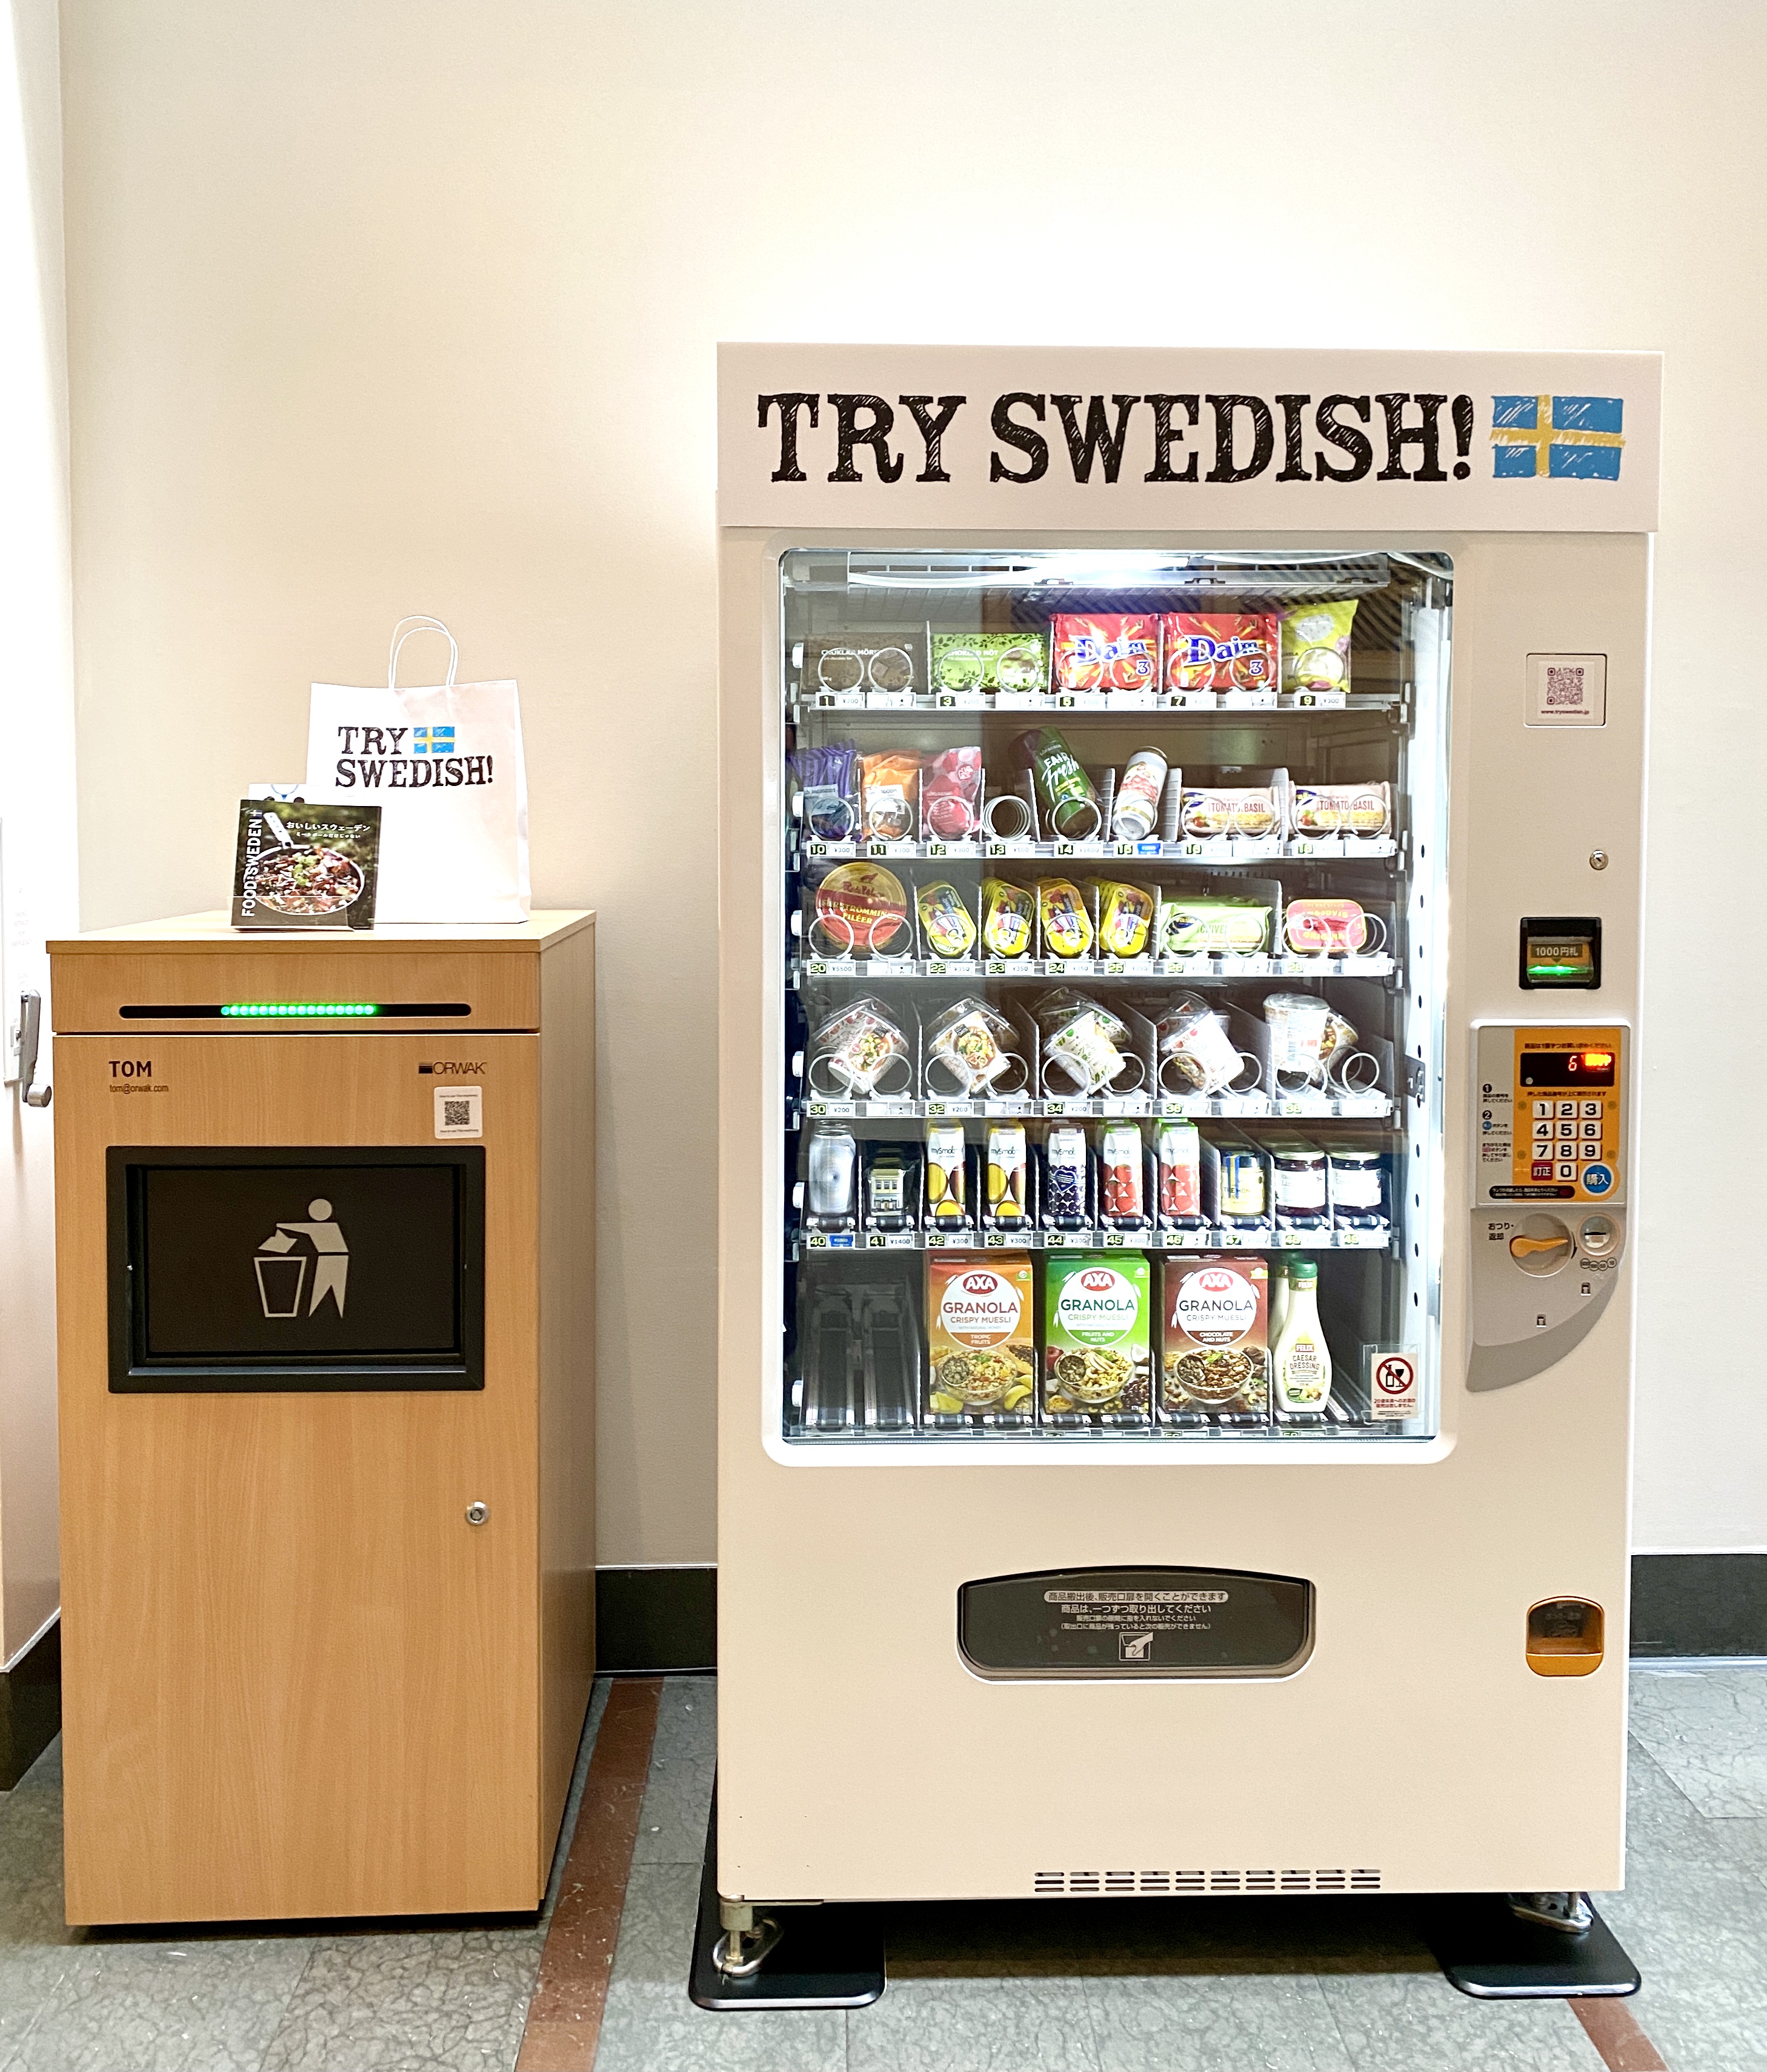 スウェーデンの食文化を推進するプログラム Try Swedish の自動販売機が複合施設green Springsにて3日間限定で初公開 スウェーデン大使館 商務部のプレスリリース